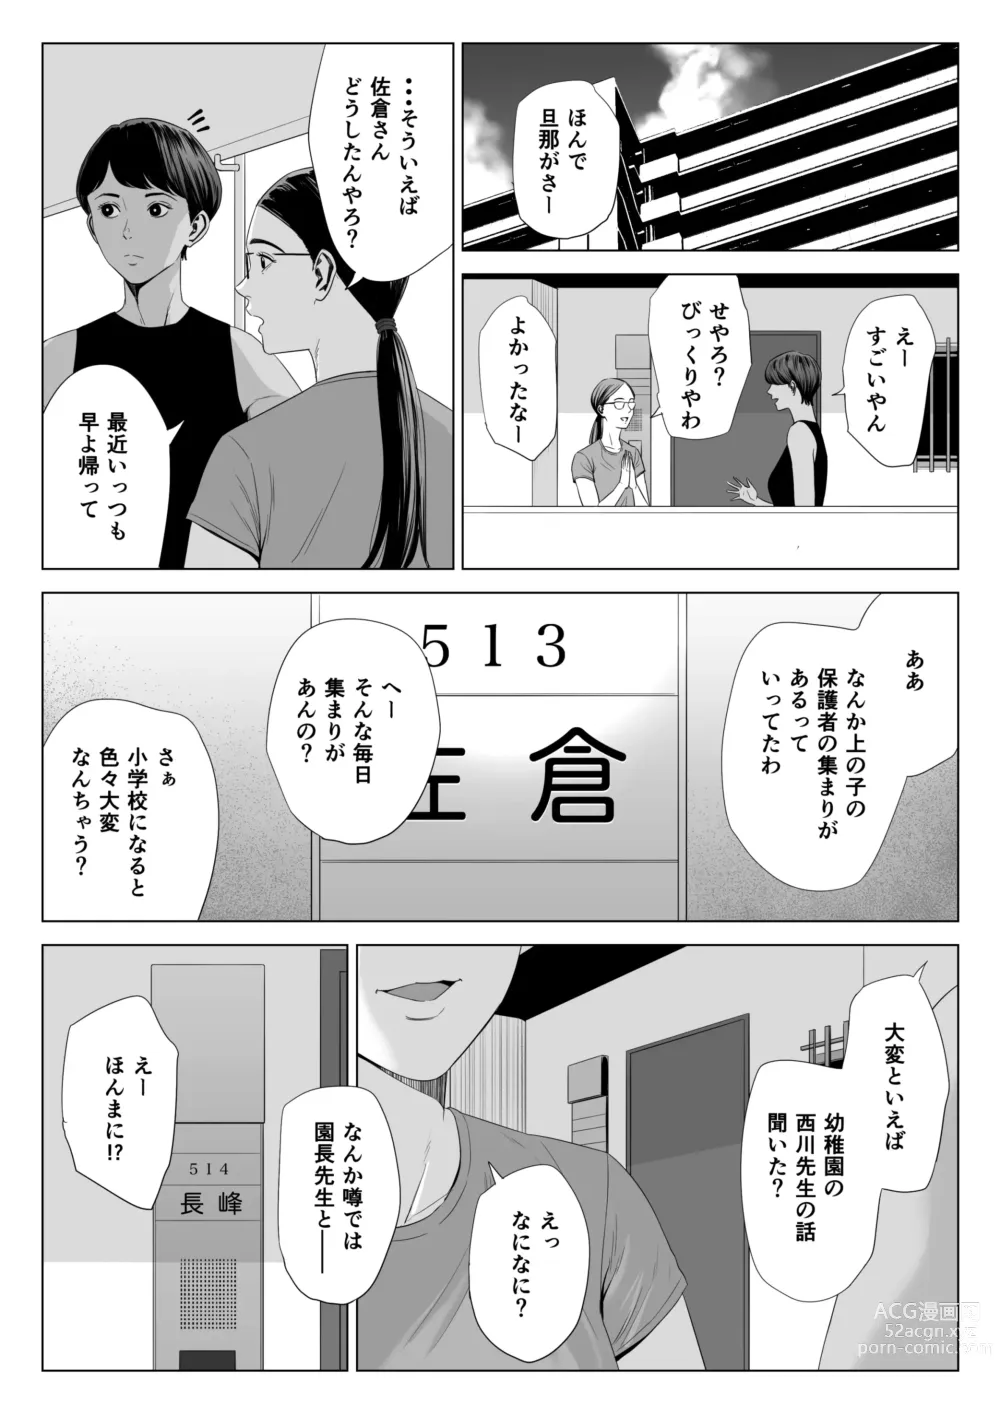 Page 49 of doujinshi Hitodzuma Mansion 513 Goushitsu Sakura Madoka